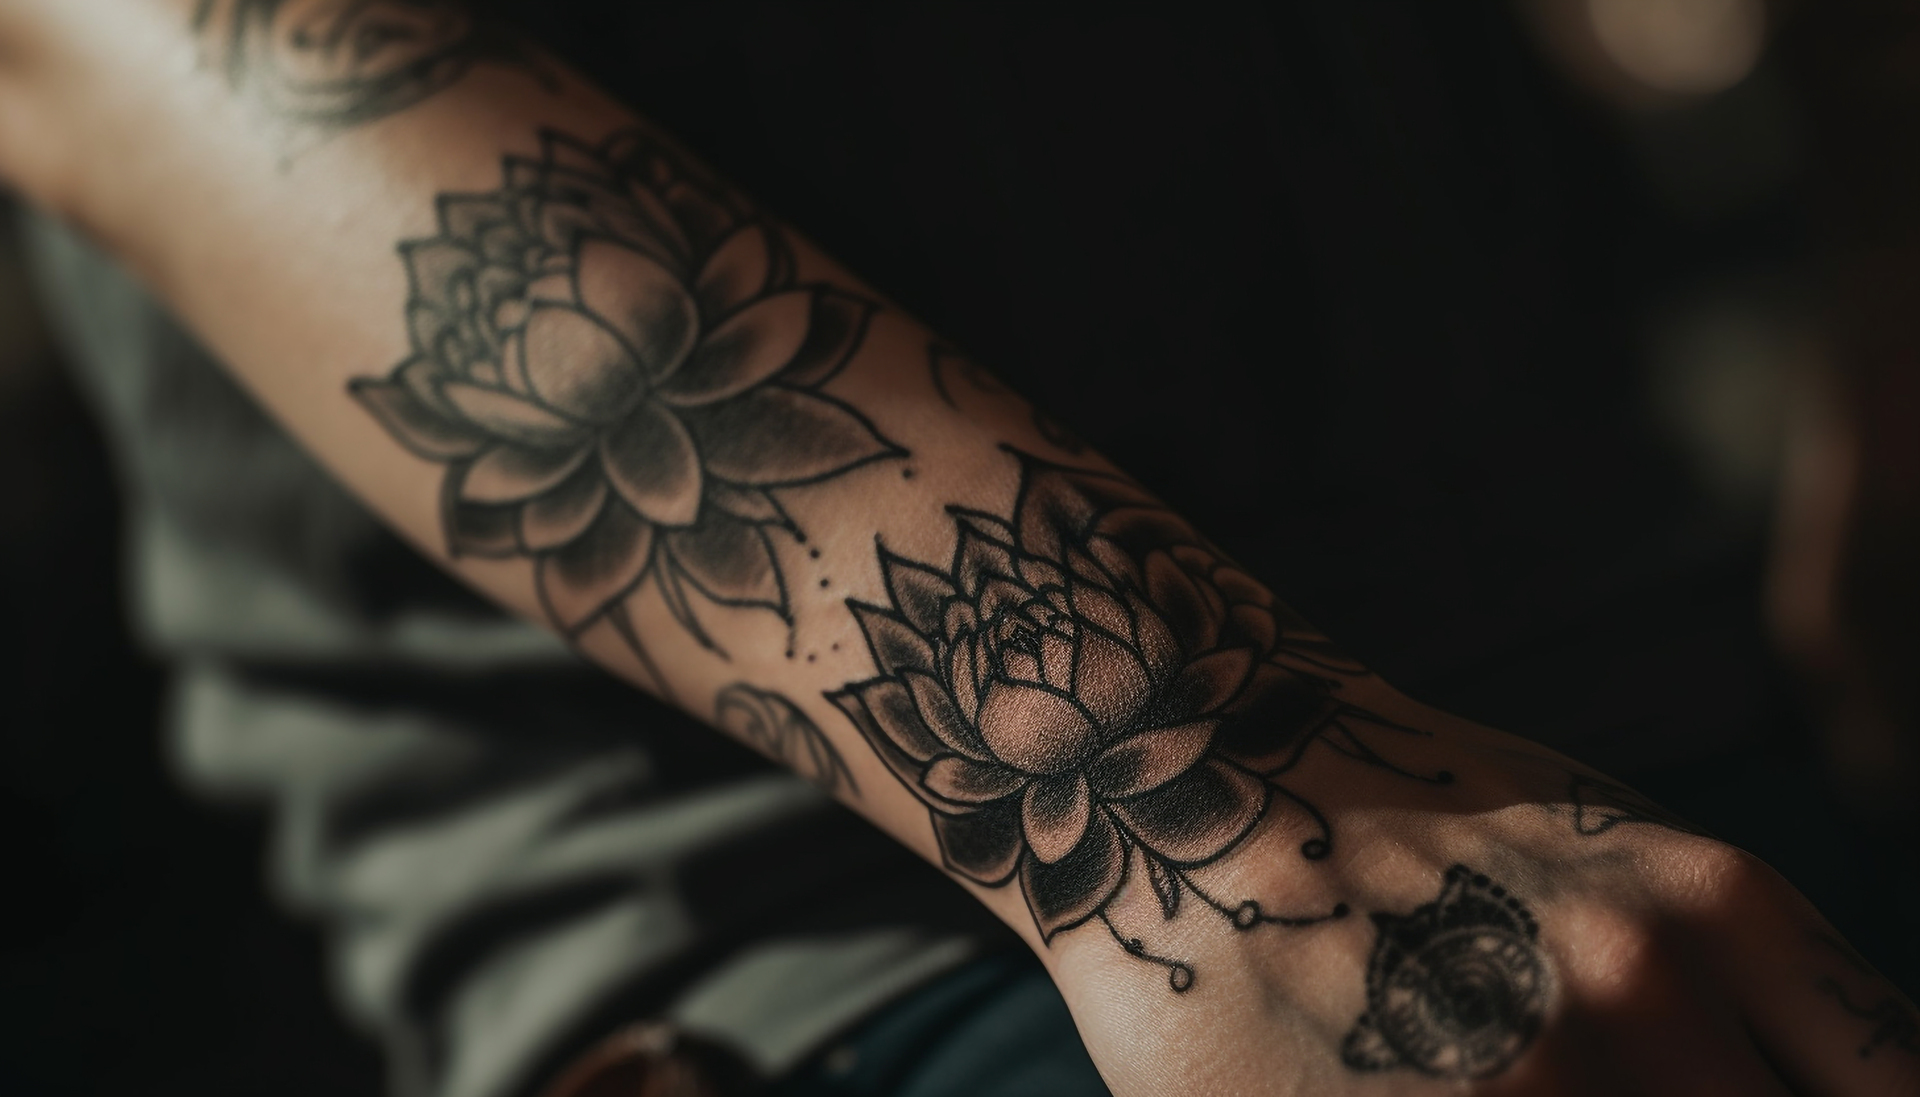 Na tym ujęciu widzimy rękę, która jest cała w tatuażach. Tatuaże na ręce są bardzo duże i zdominowały całą przestrzeń. Różne motywy, kolorystyka i style tatuaży na ręce podkreślają indywidualny styl i wyjątkowość osobowości właściciela. Ręka z tatuażami jest ujęta w taki sposób, aby wydawała się bardzo realistyczna, co podkreśla znaczenie tatuaży w życiu osoby, która je nosi. Obrazek ukazuje, że tatuaże to nie tylko ozdoba, ale także wyraz sztuki i indywidualnego stylu życia.